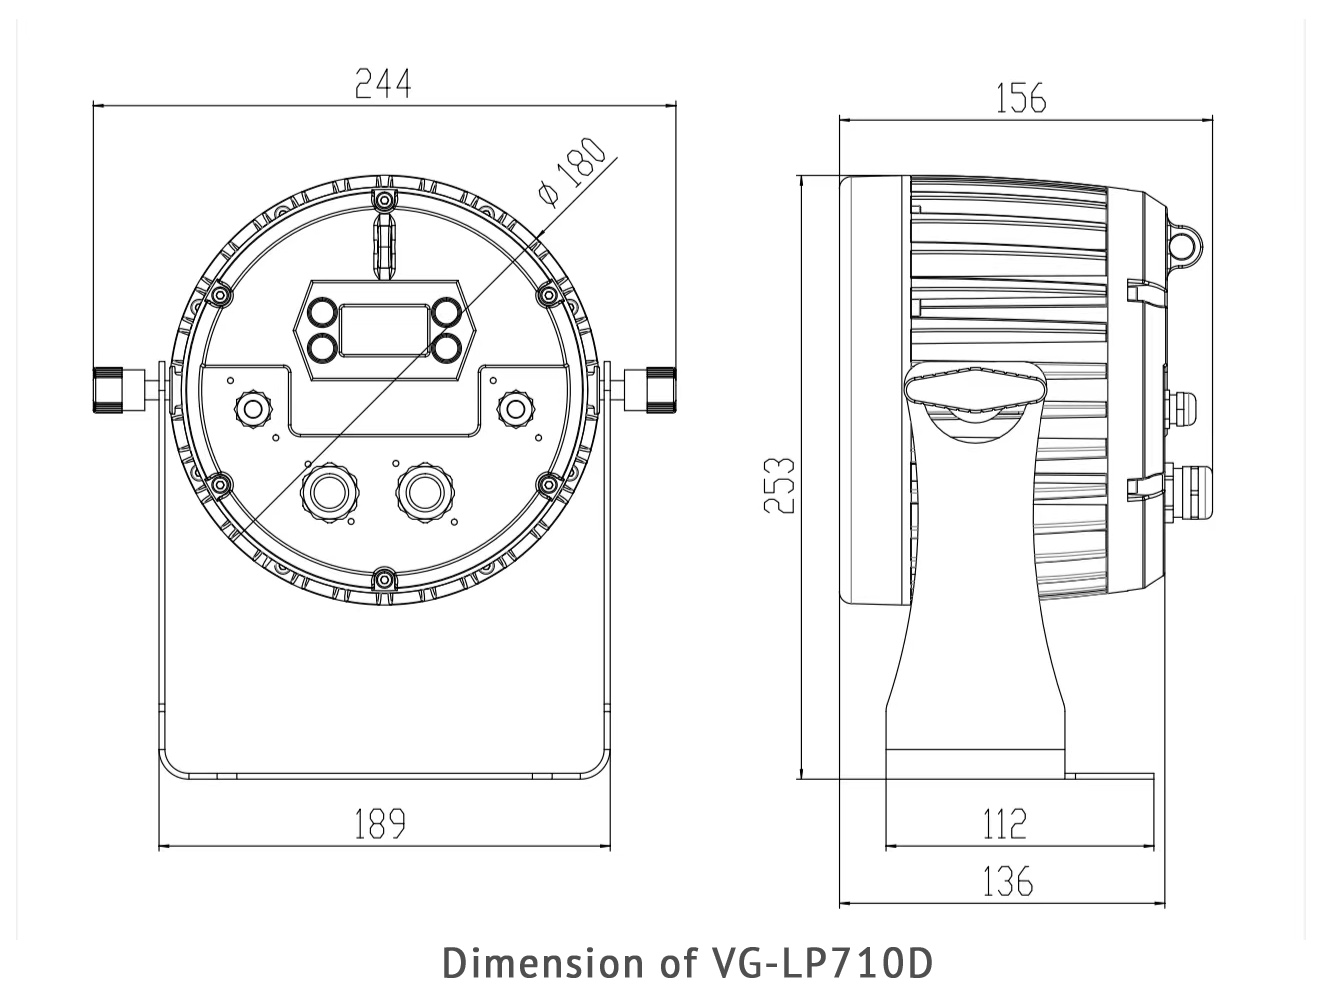 dimension of VG-LP710D